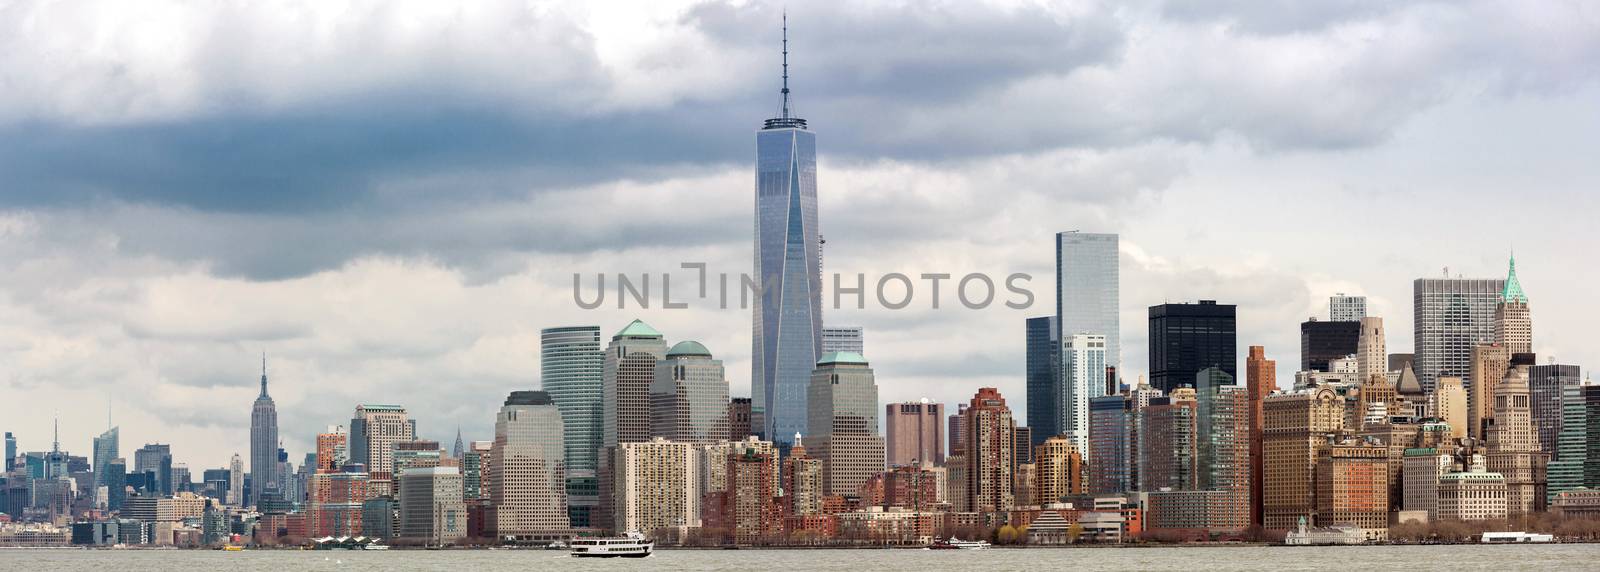 Panorama of New York City at Lower Manhattan